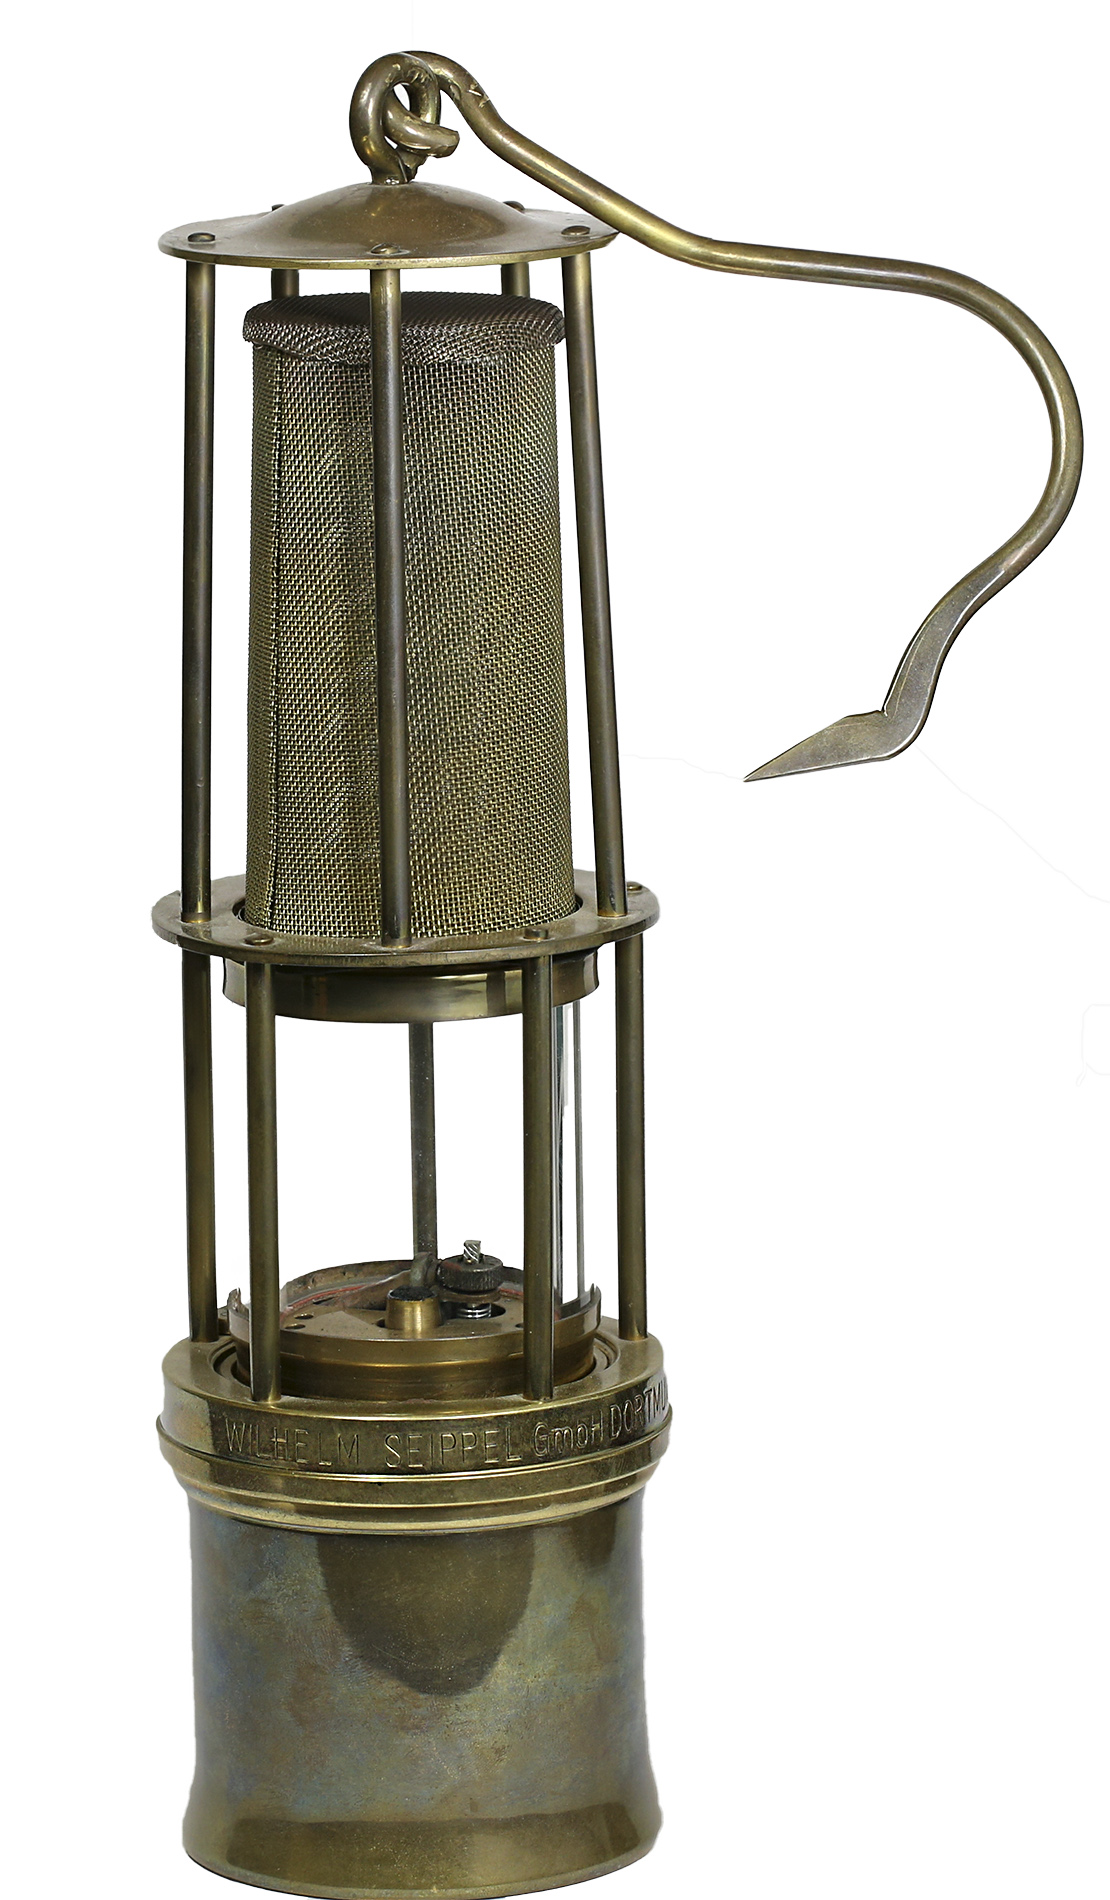 Grubenlampe Wetterlampe Glas 6cm Durchmesser Höhe 5,9cm 